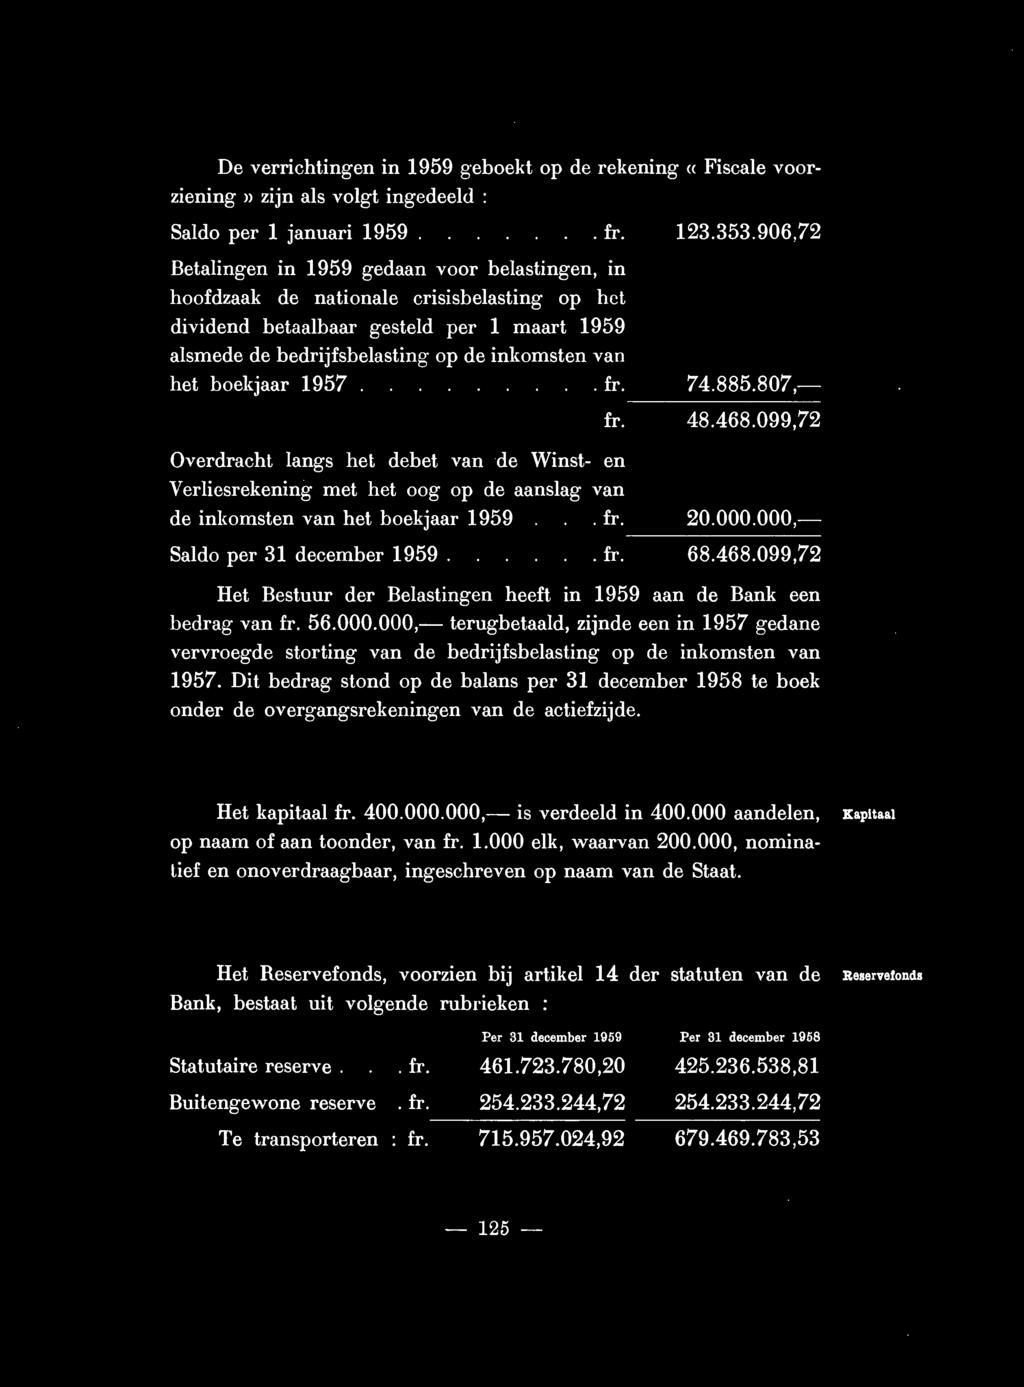 boekjaar 1957.. fr. 74.885.807,- -------- fr. 48.468.099,72 Overdracht langs hel debet van de Winst- en Verliesrekening met het oog op de aanslag van de inkomsten van het boekjaar 1959. fr. 20.000.